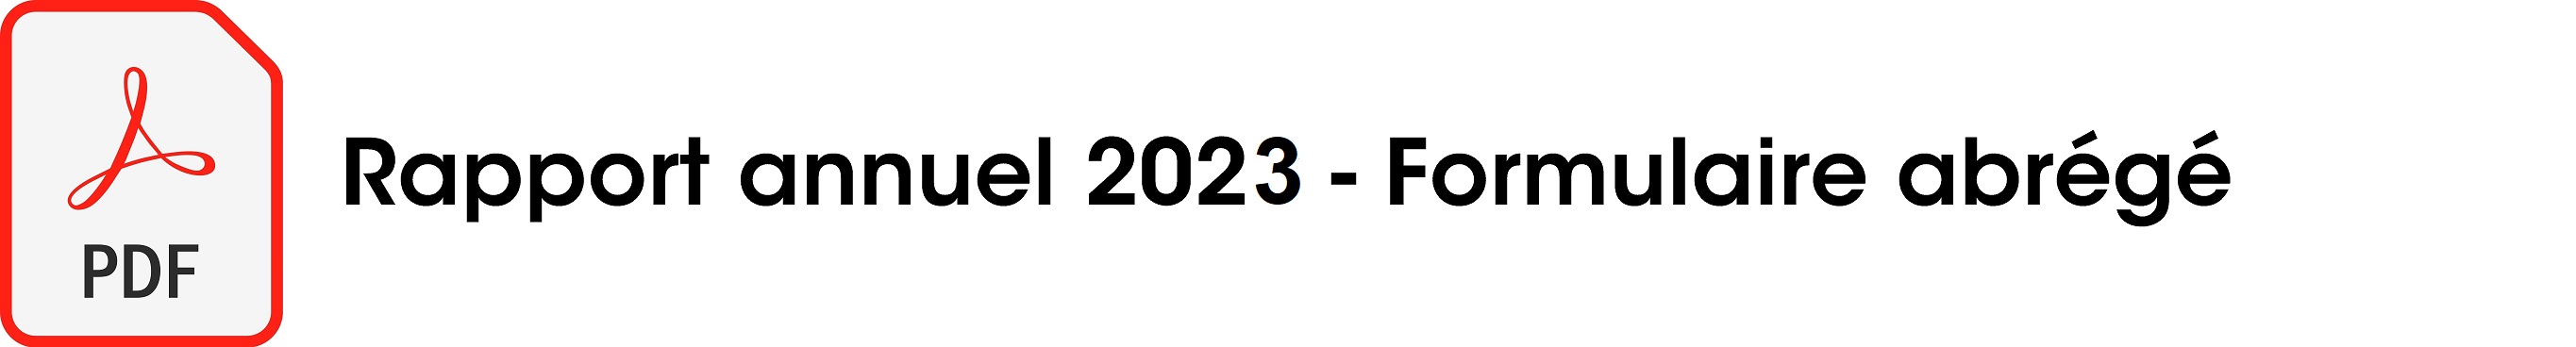 rapport annuel abrégé 2023.jpg